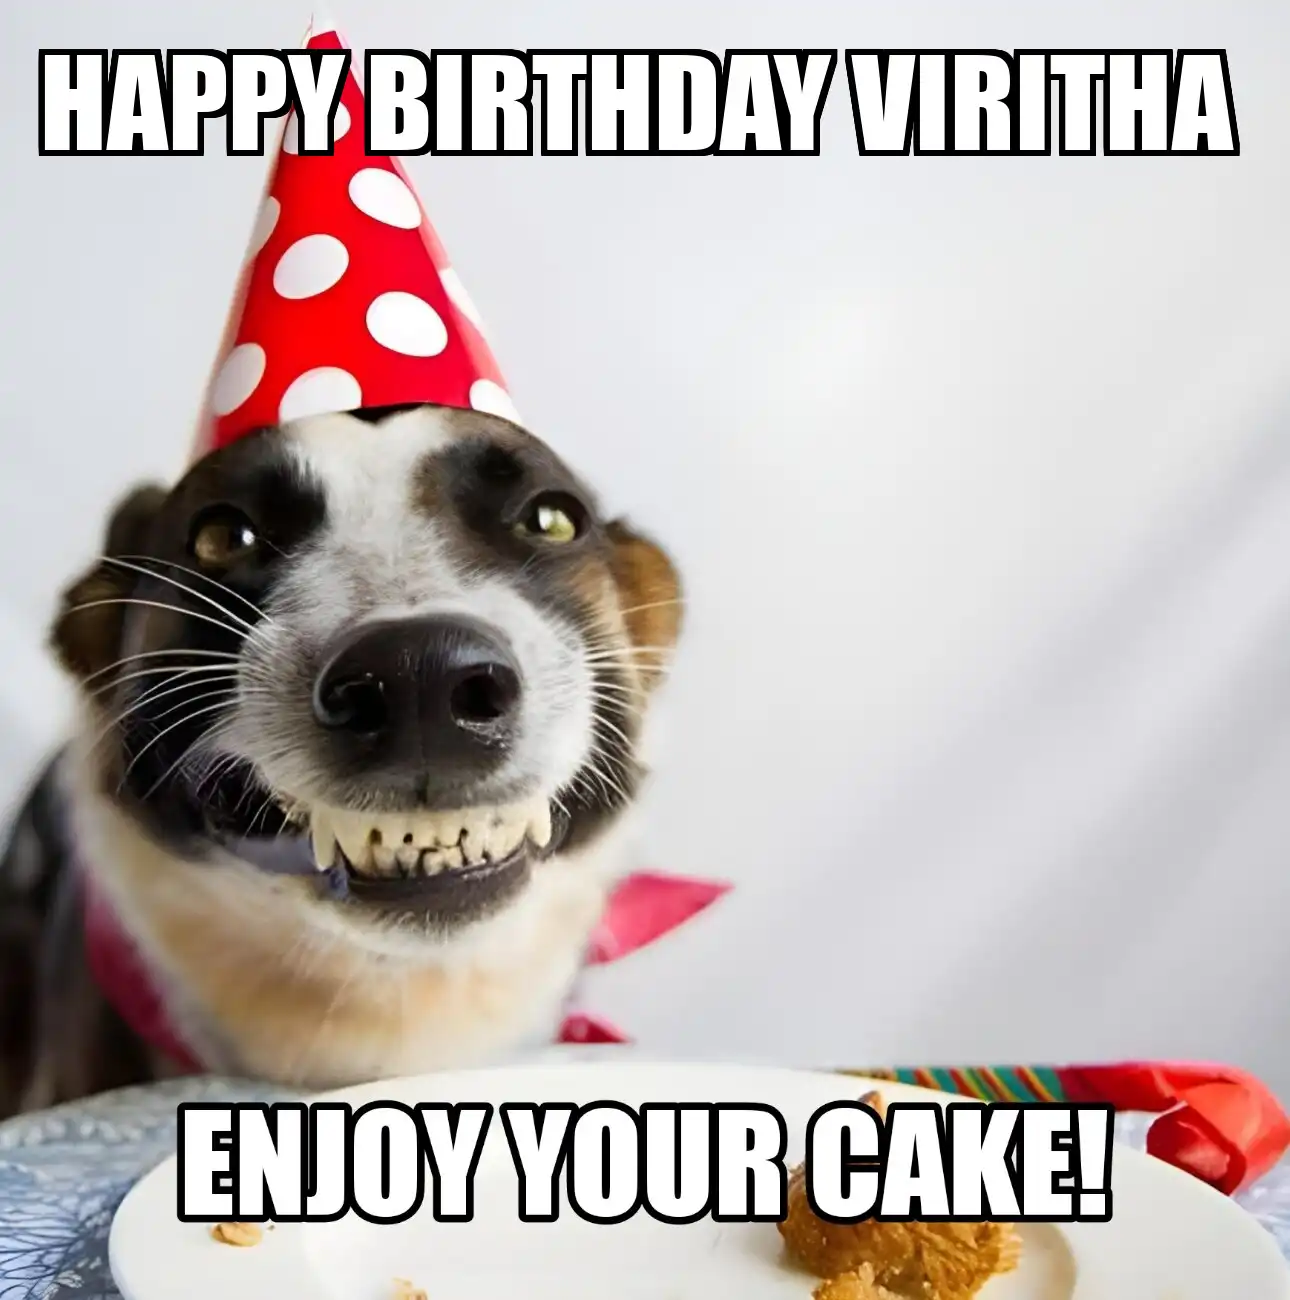 Happy Birthday Viritha Enjoy Your Cake Dog Meme